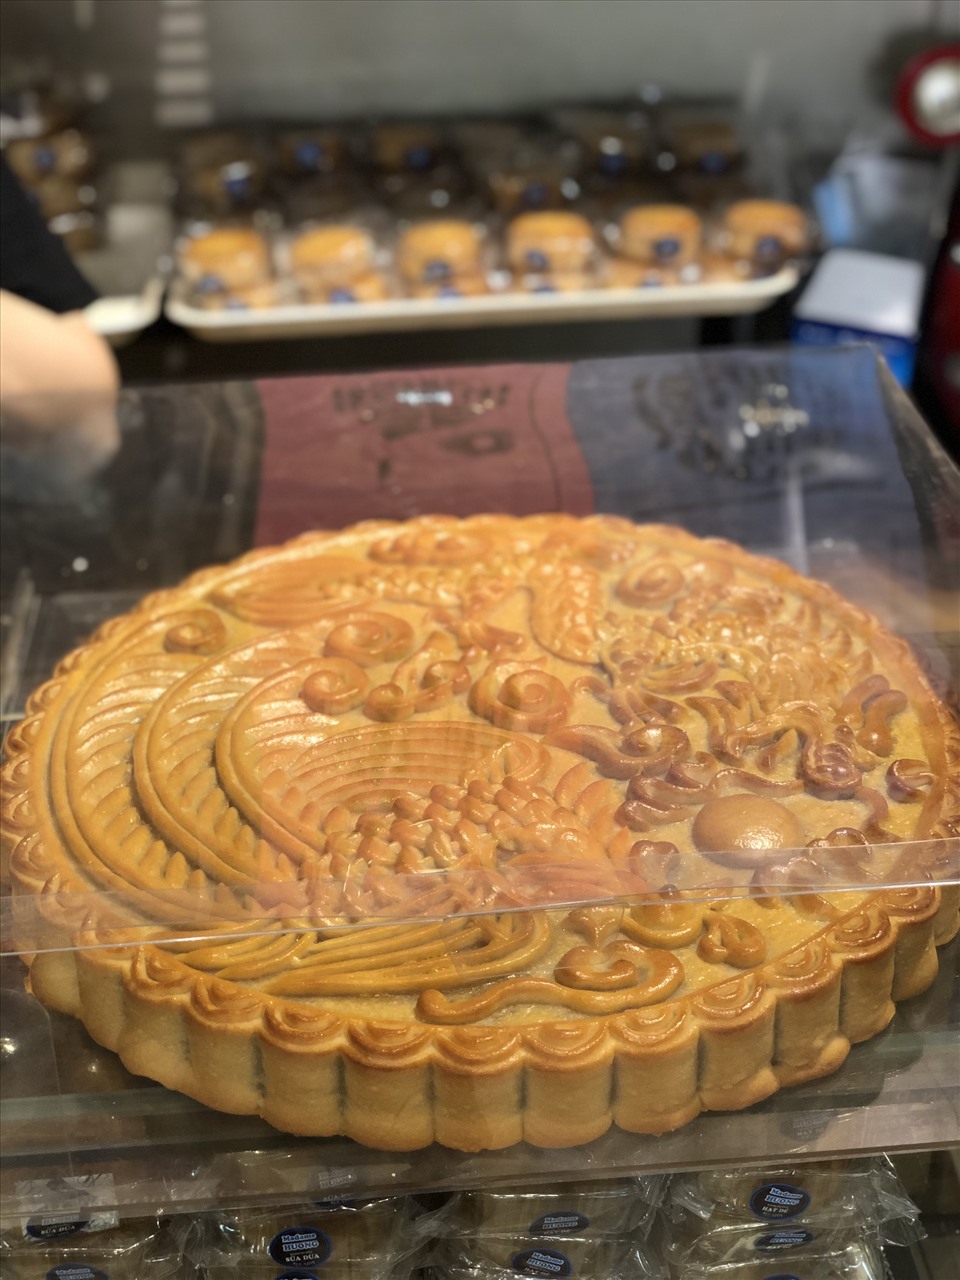 Chiếc bánh Trung thu có cân nặng 7,5kg đang được bày bán ở một cửa hàng tại Hà Nội. Ảnh: Khánh Linh.